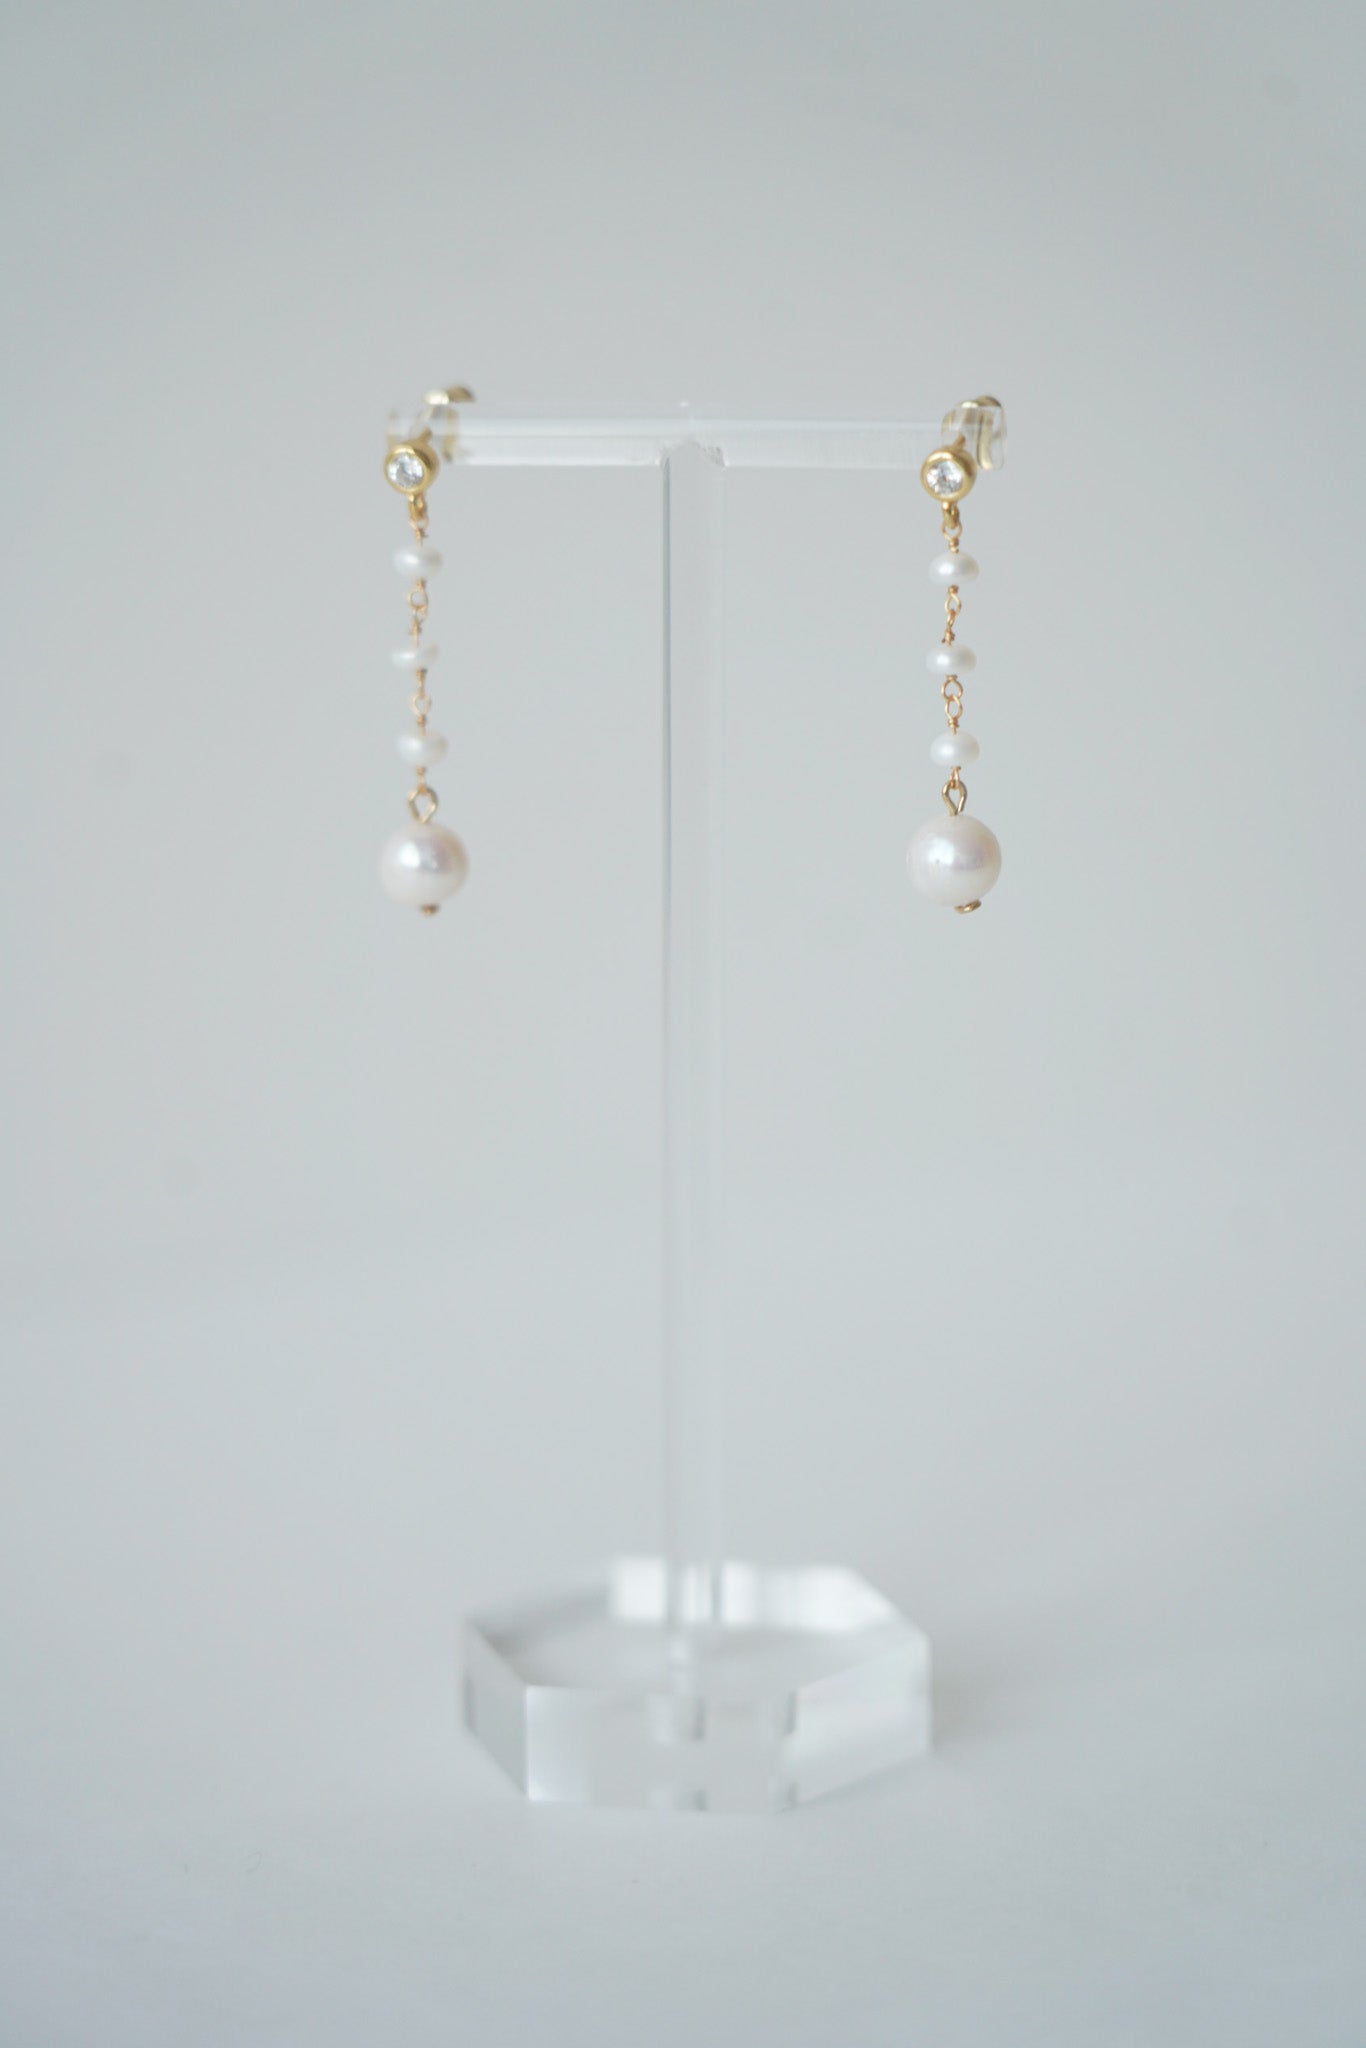 boucles d'oreilles pour mariée faite avec des perles naturelles et du fil en or pour un mariage minimaliste